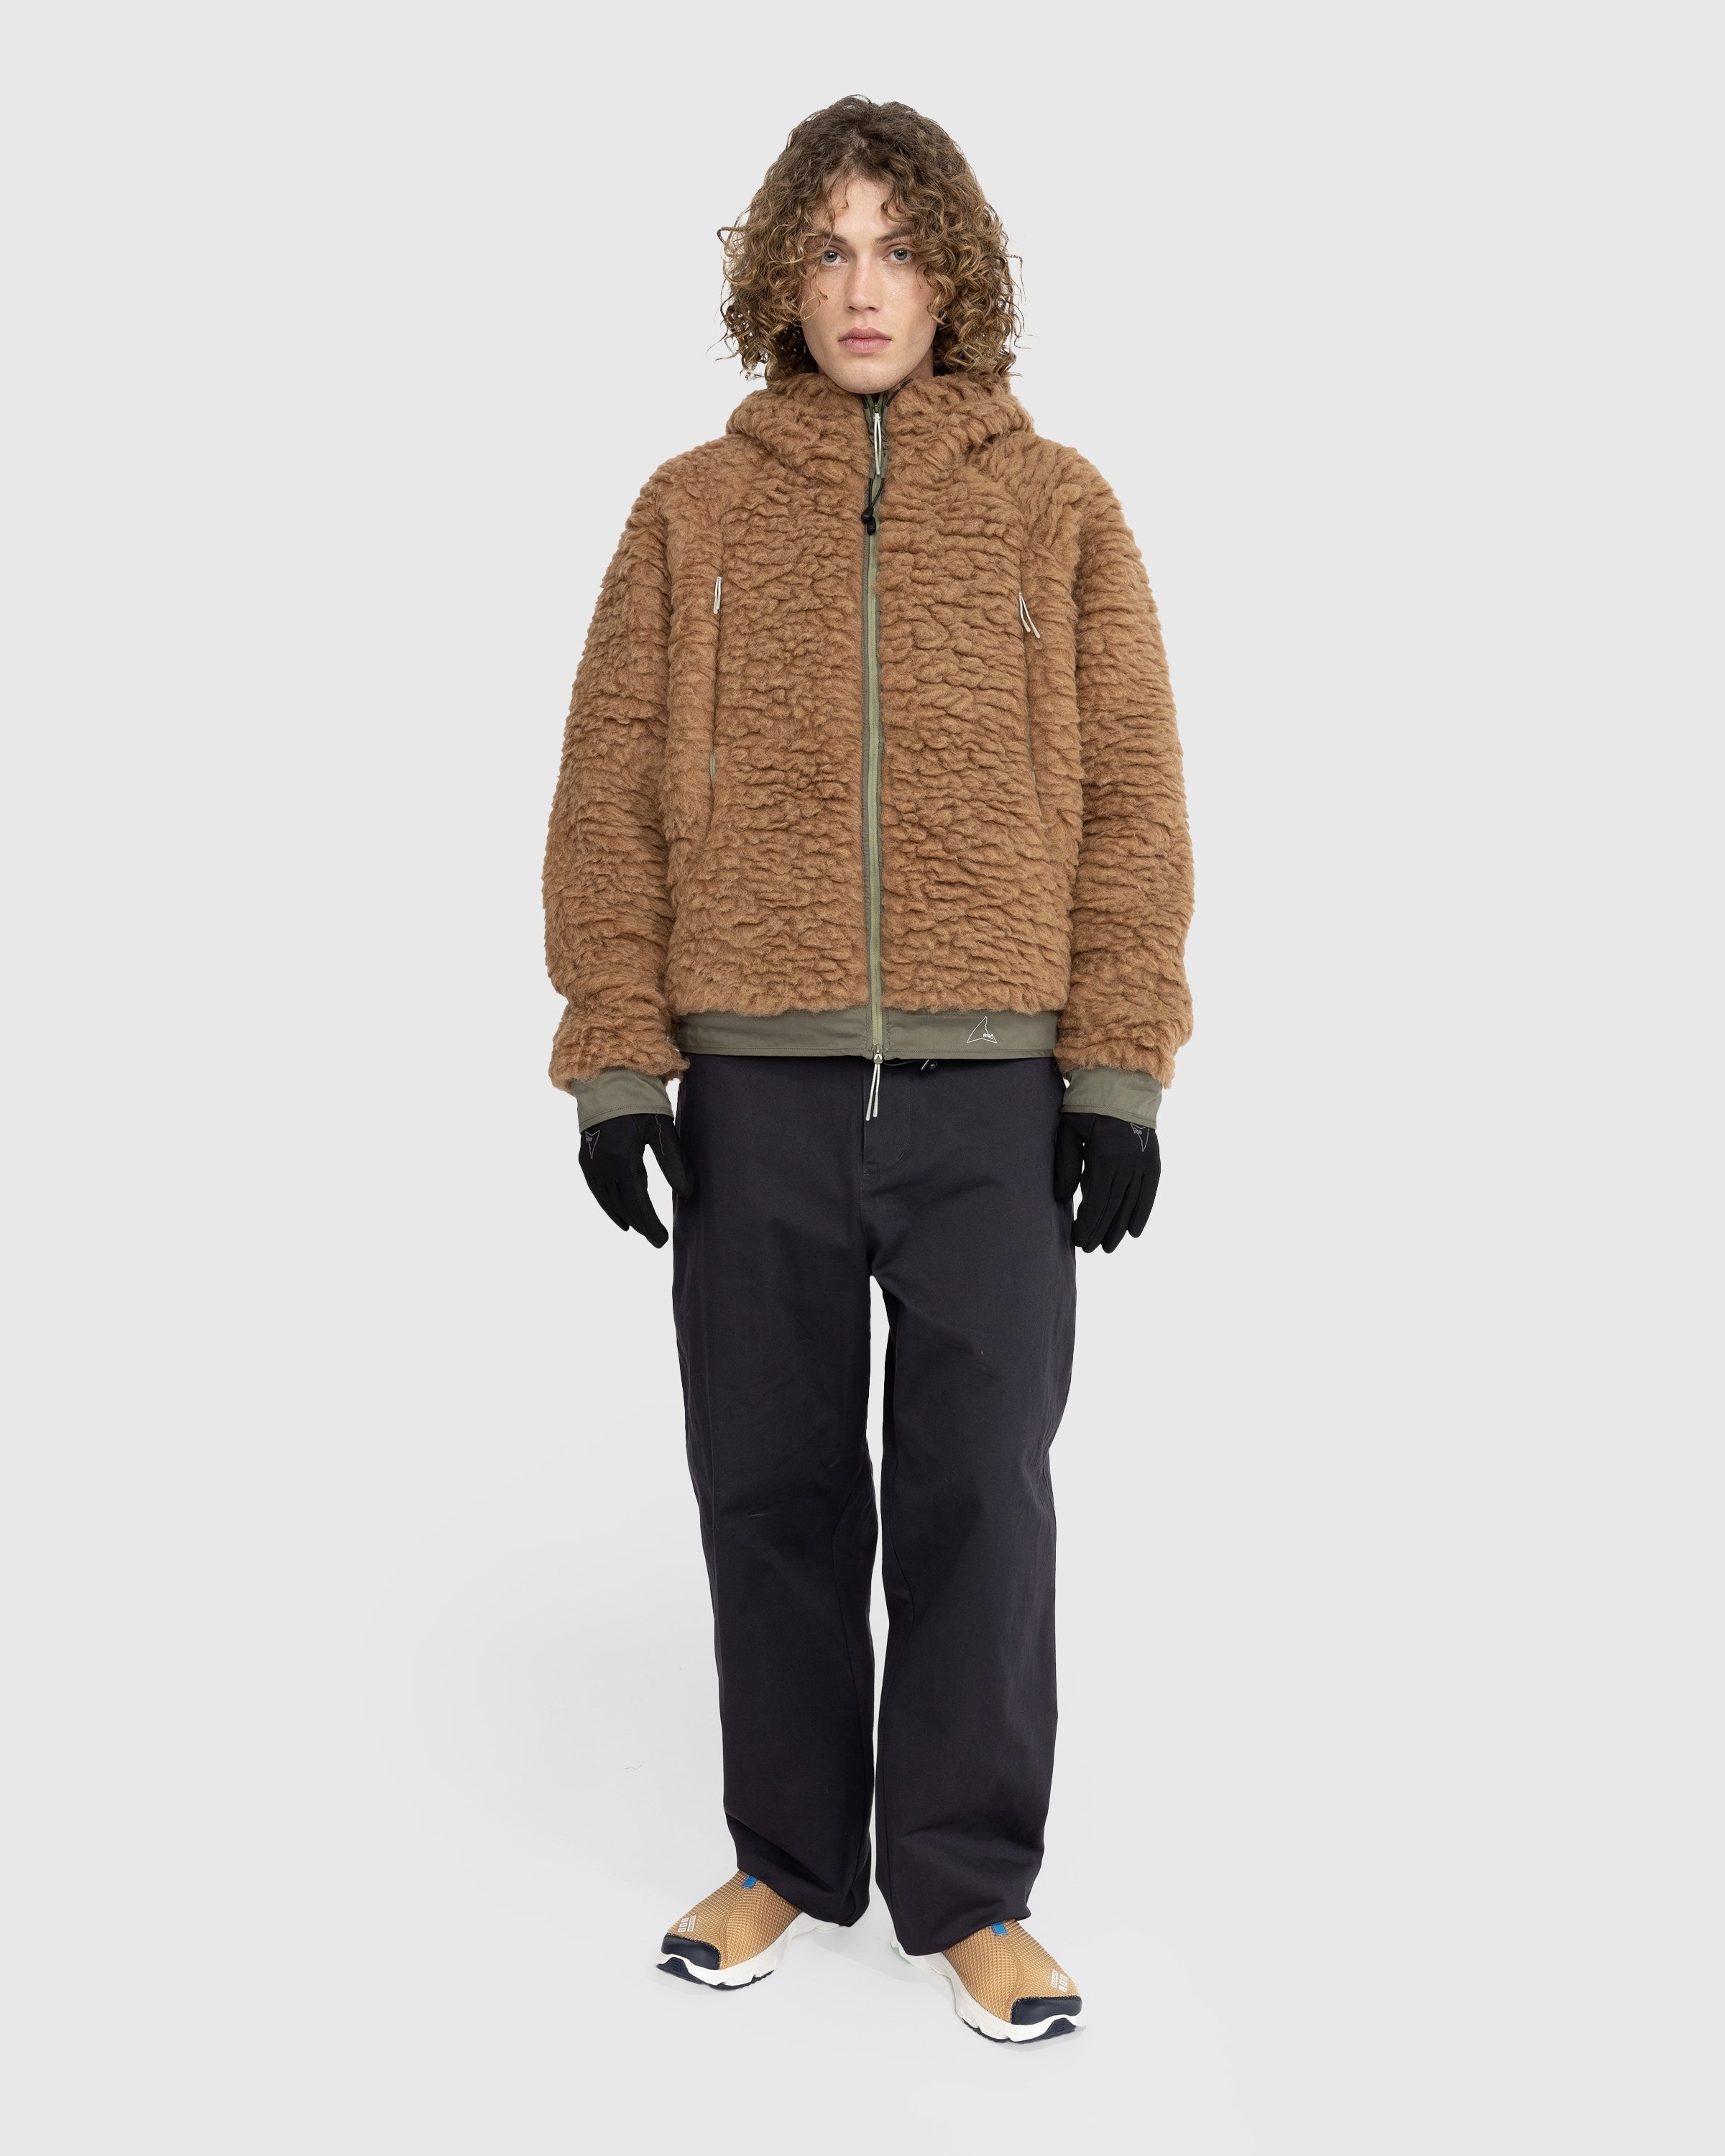 ROA – Polar Fleece Jacket Camel/Olive - Outerwear - Green - Image 3